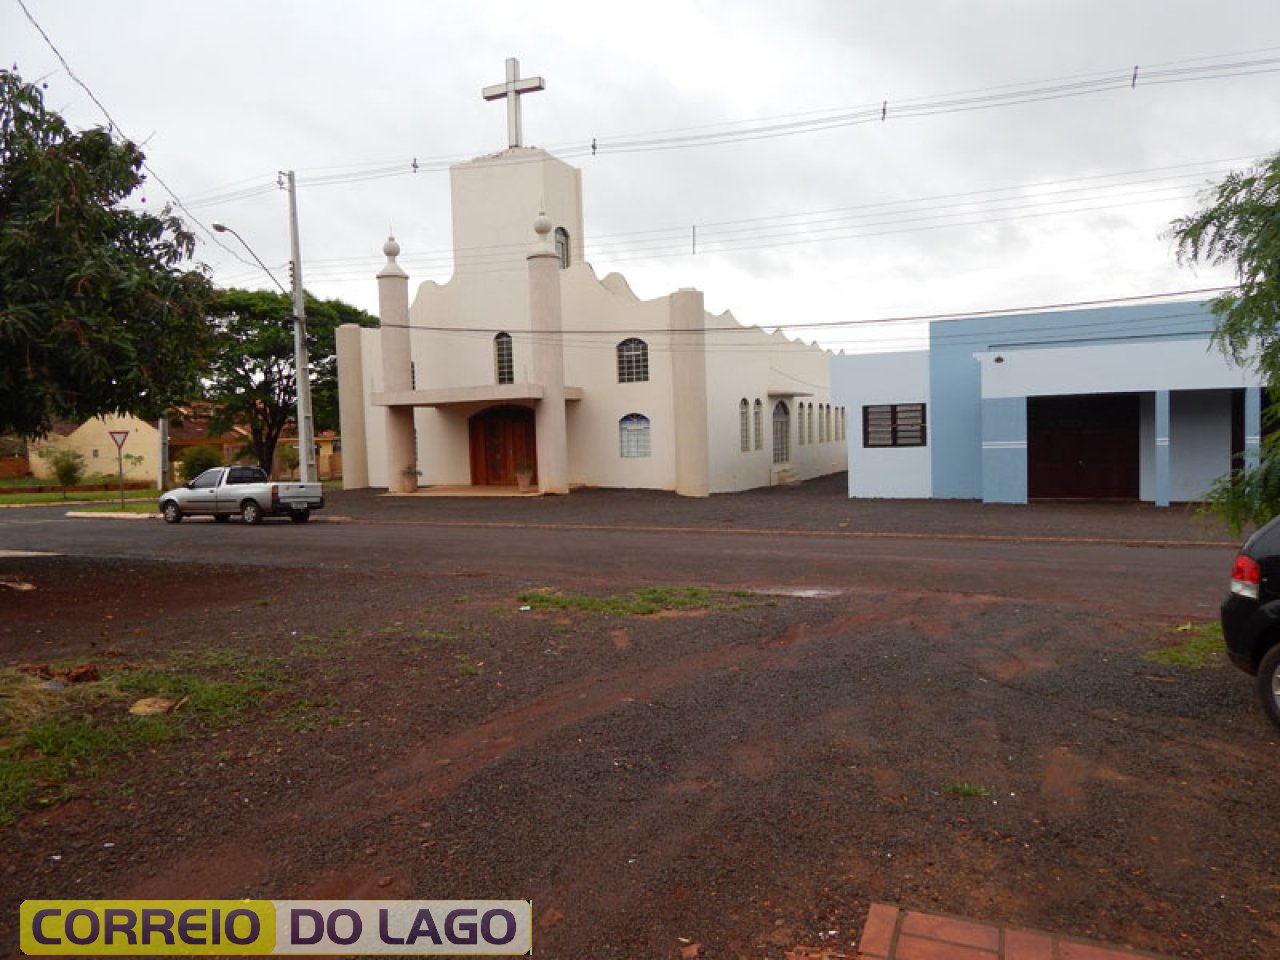 Igreja São Luiz Gonzaga - Bairro S. Luiz. José Carvalho foi mestre de obra quando da construção do templo religioso.